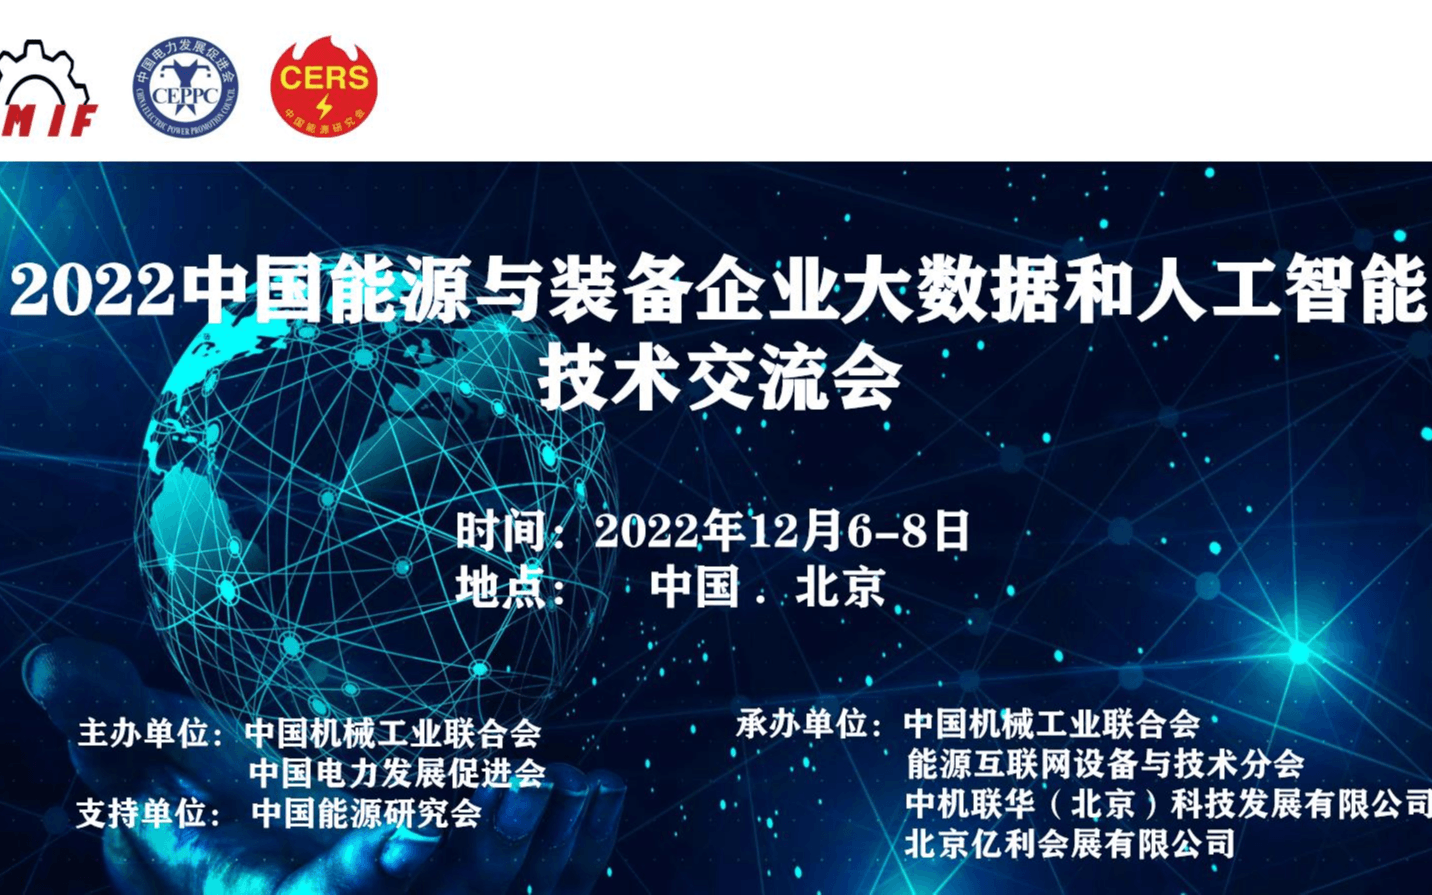 2022中國能源與裝備企業大數據和人工智能技術交流會